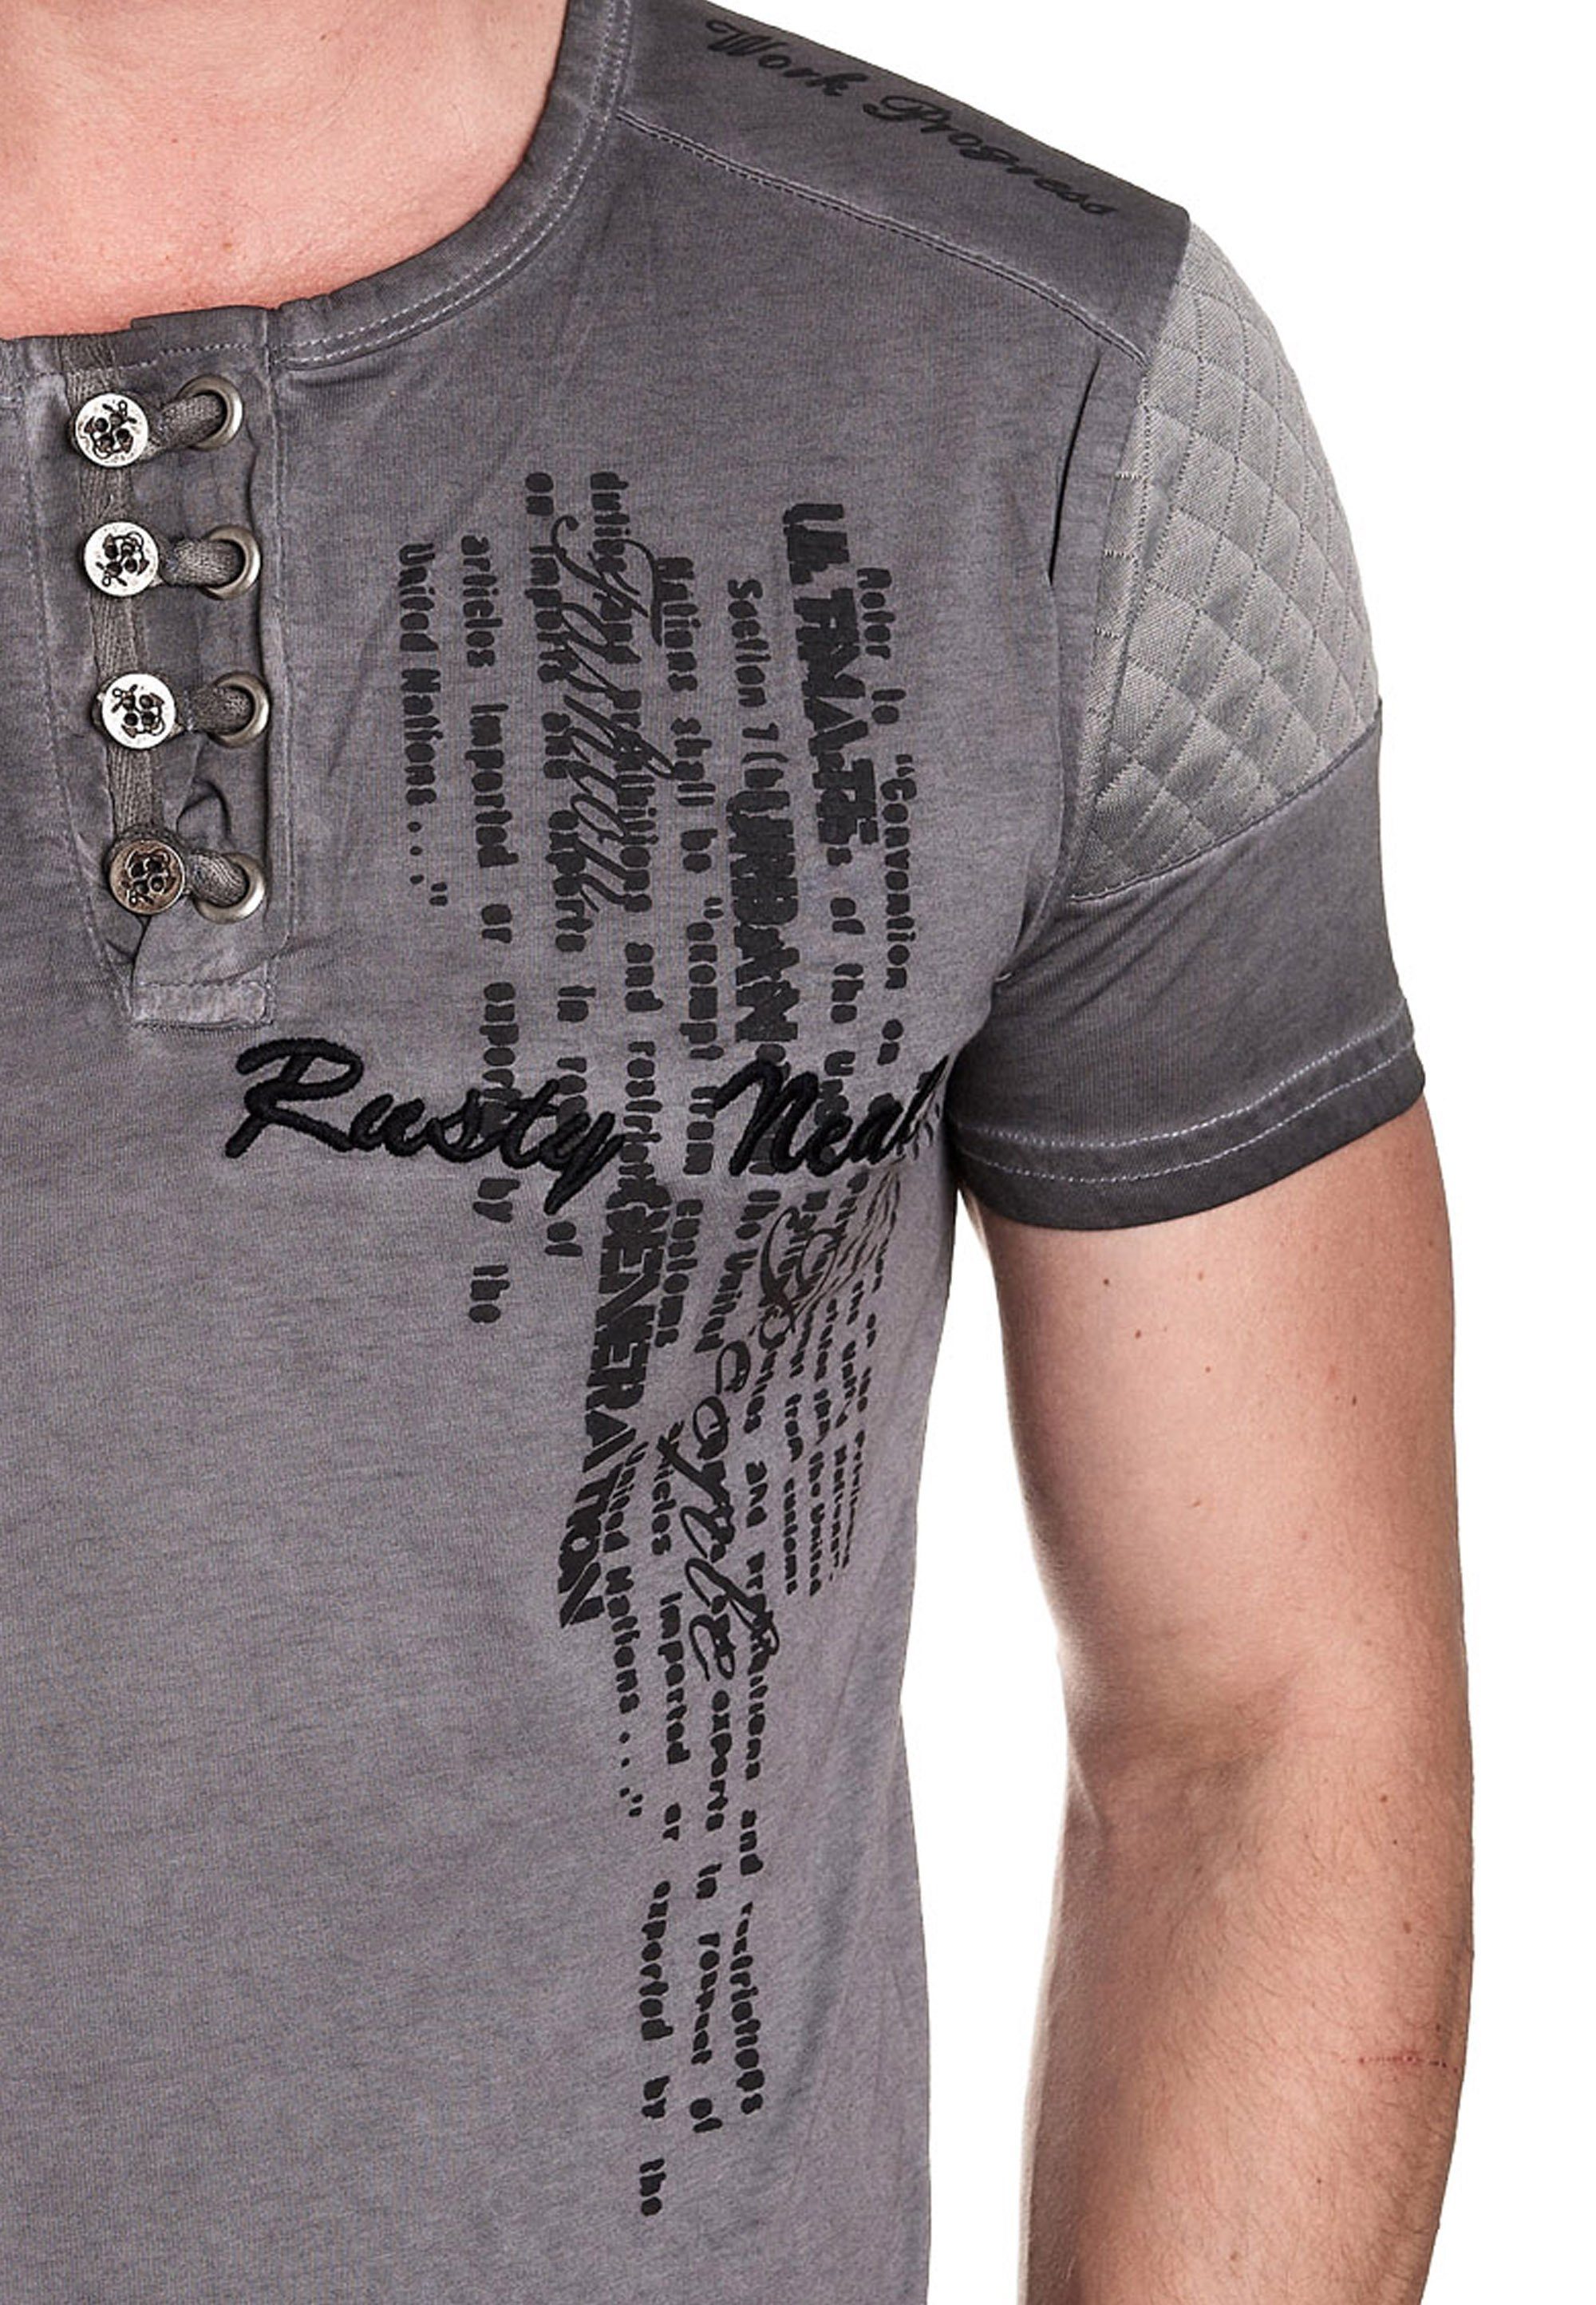 Rusty mit Neal T-Shirt schicker anthrazit Knopfleiste